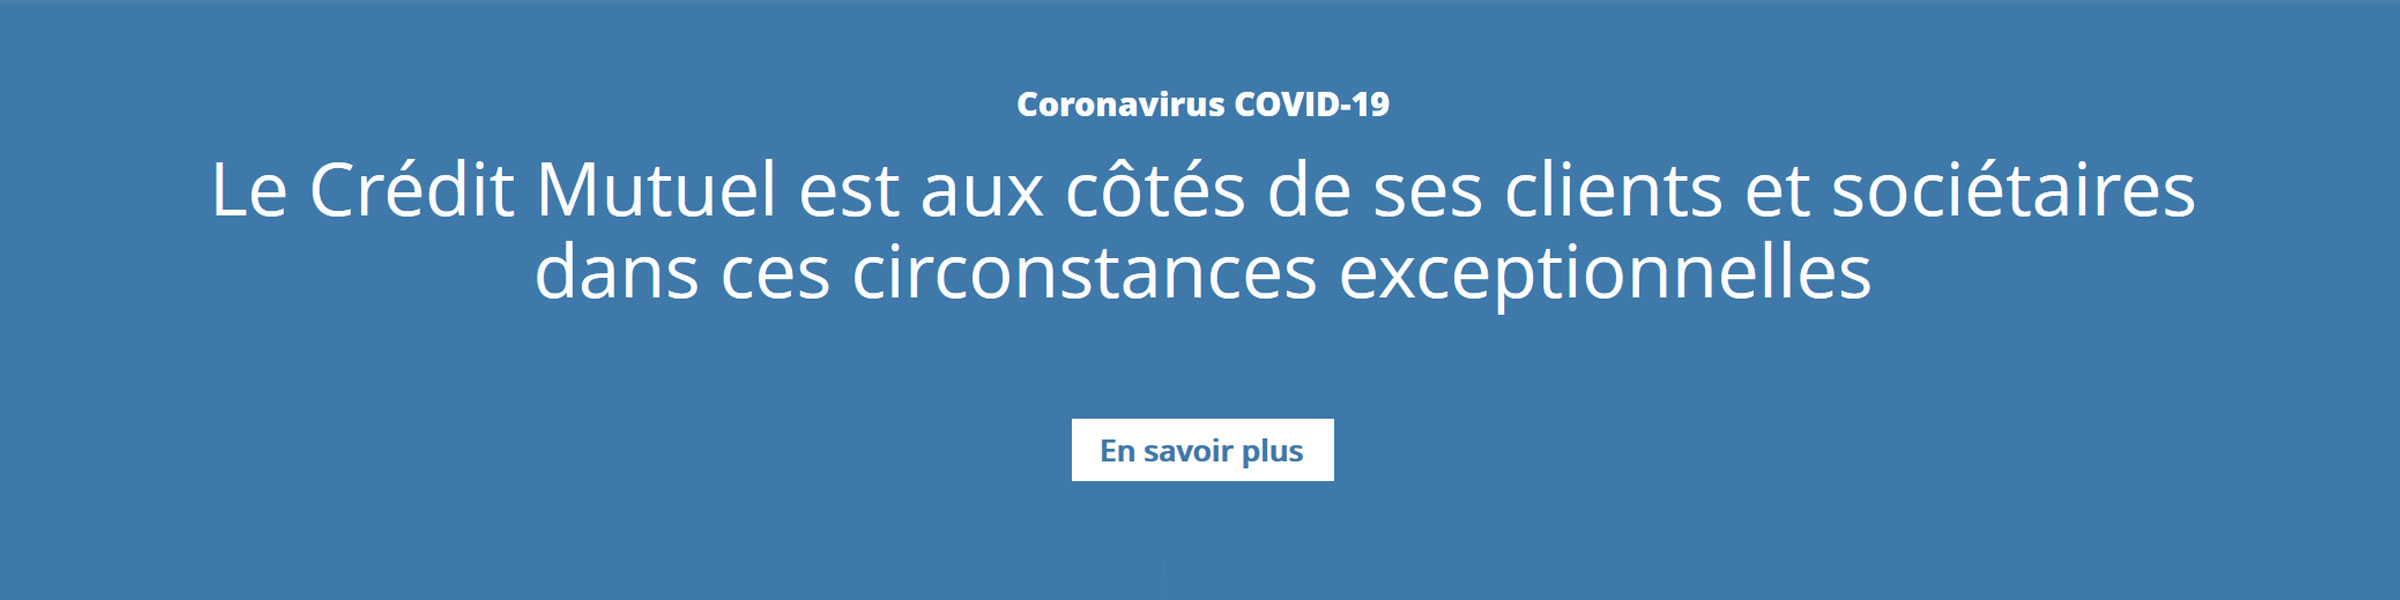 Coronavirus COVID-19 : Le Crédit Mutuel est aux côtés de ses clients et sociétaires dans ces circonstances exceptionnelles. En savoir plus